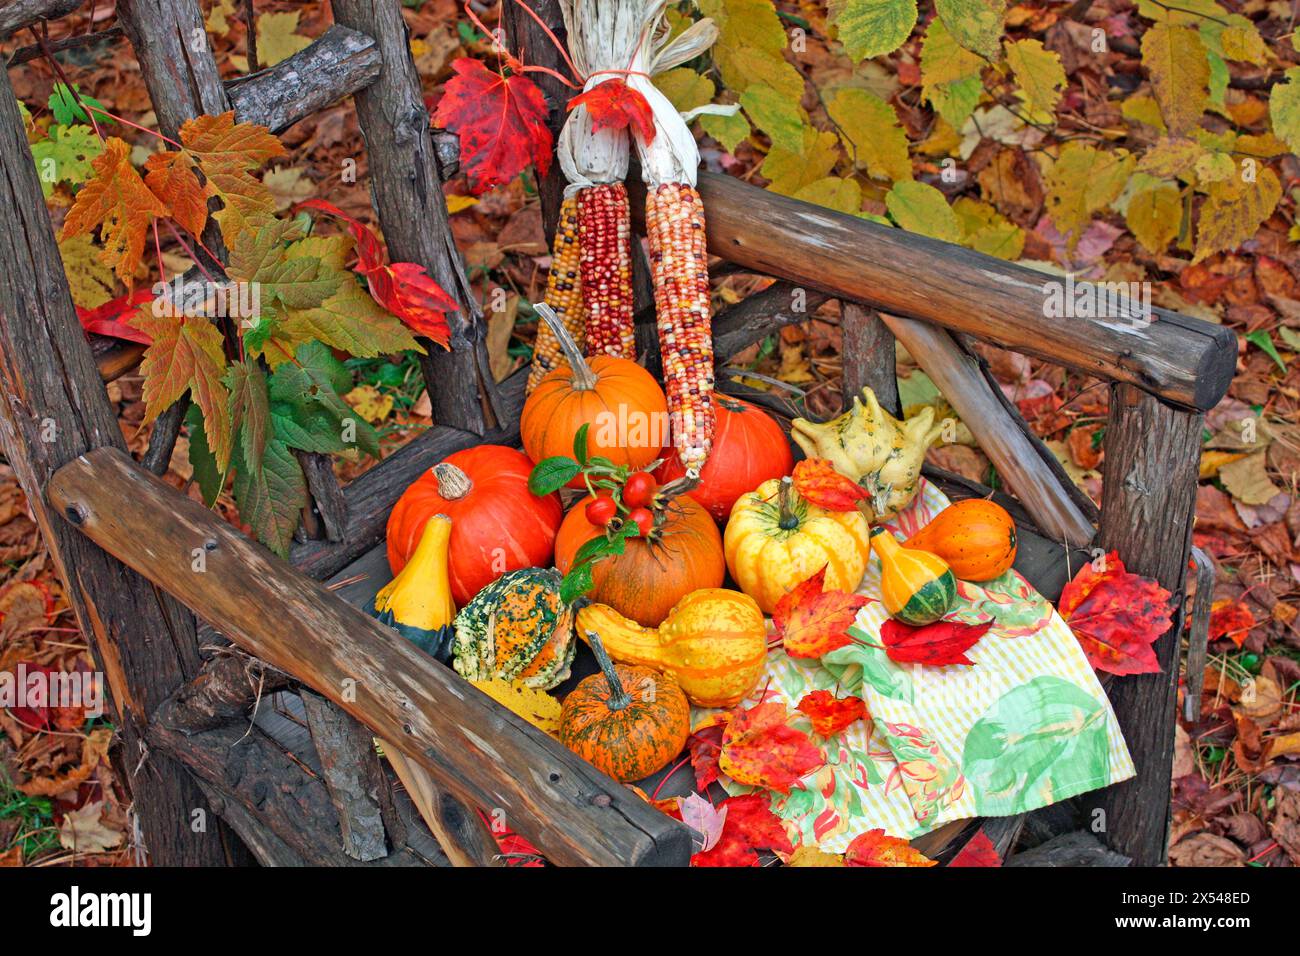 botanica, zucche colorate, mais e rosehips su una sedia in legno rustica con foglie acer. ALL'APERTO, INFORMAZIONI-AUTORIZZAZIONE-AGGIUNTIVE-NON-DISPONIBILI Foto Stock